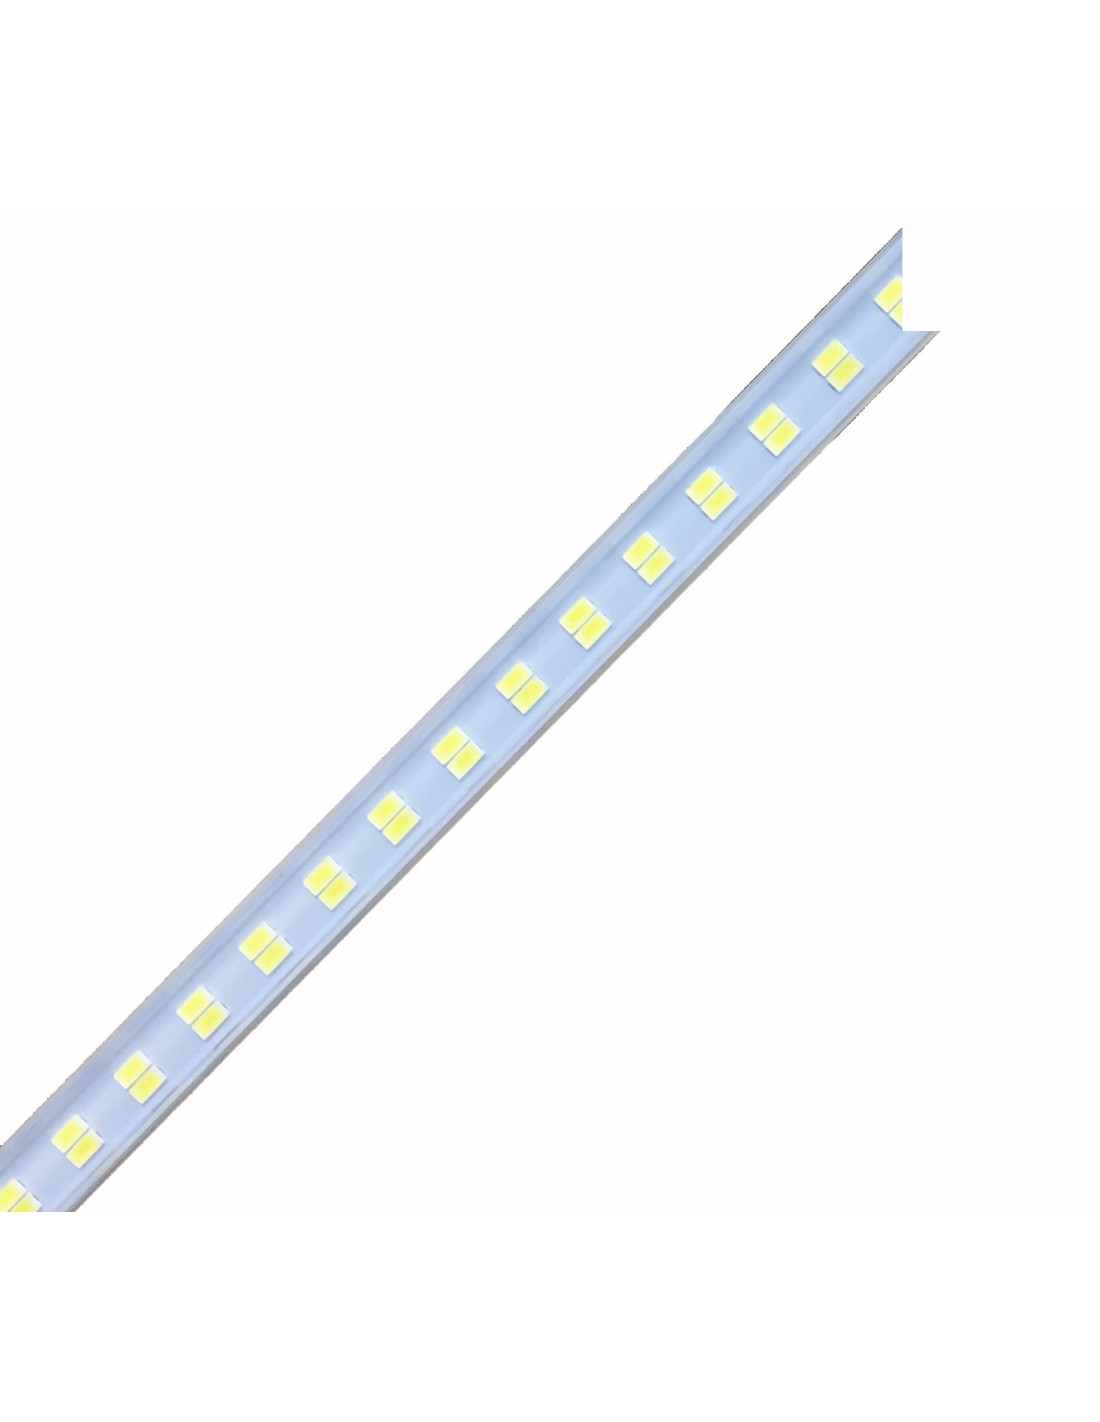 Iluminación de LED -Para mod. FESTIVAL-6 - disponible sólo con el plan de servicio de plexiglass